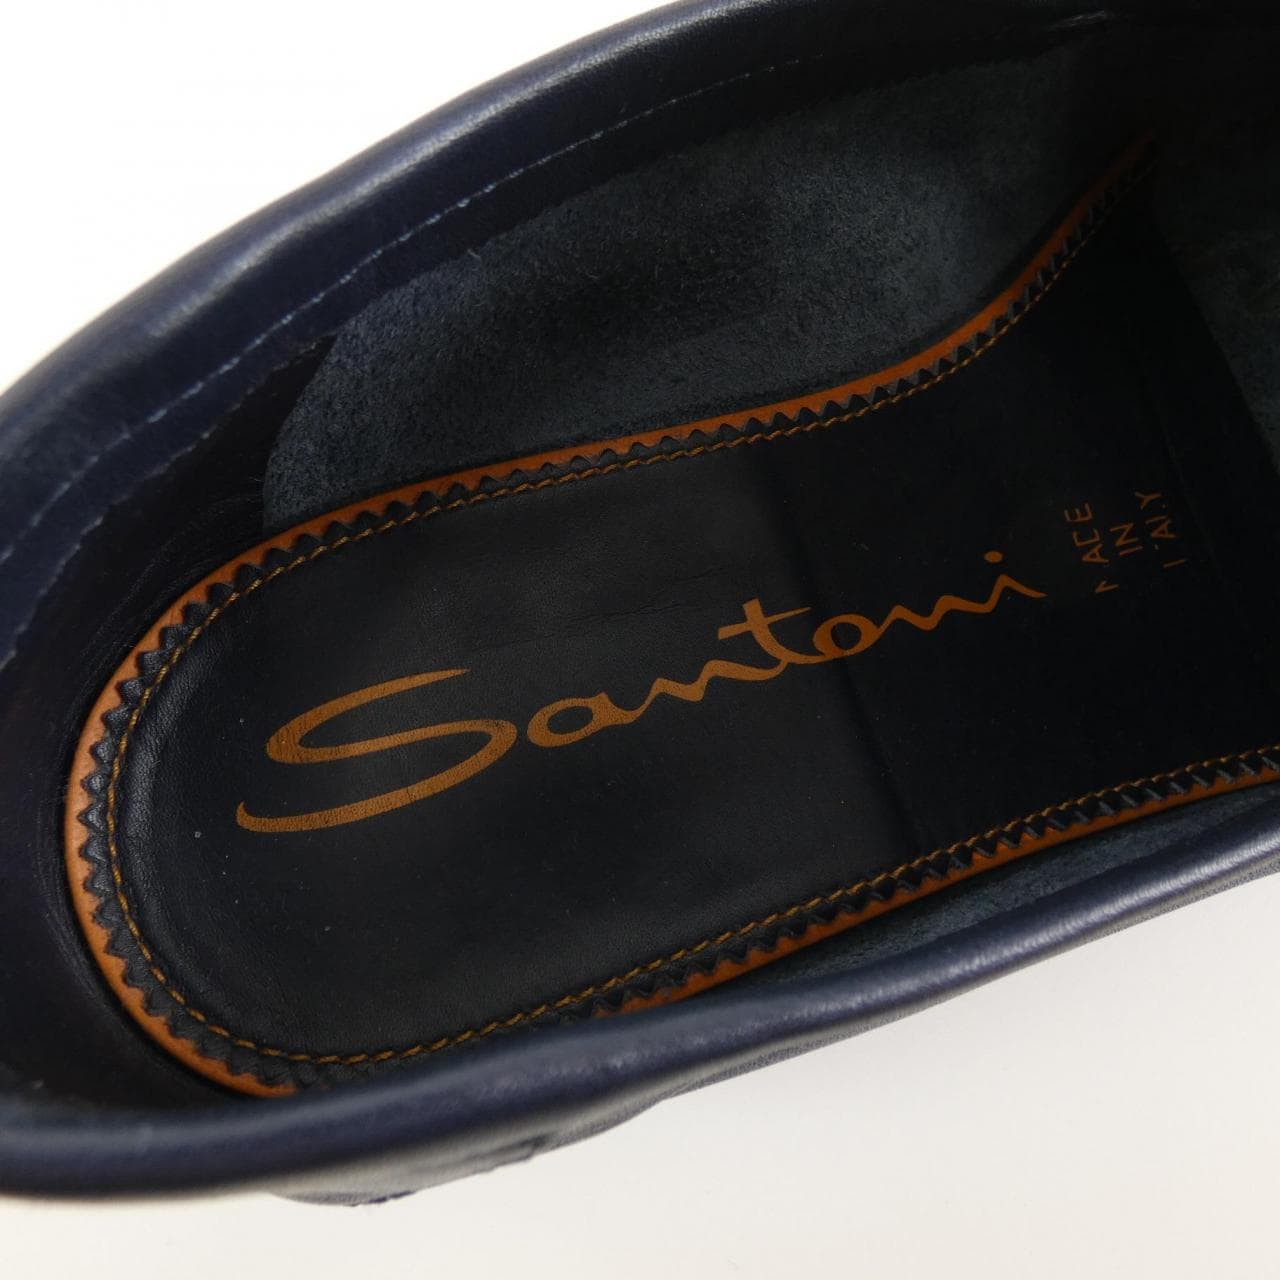 Santoni SANTONI shoes